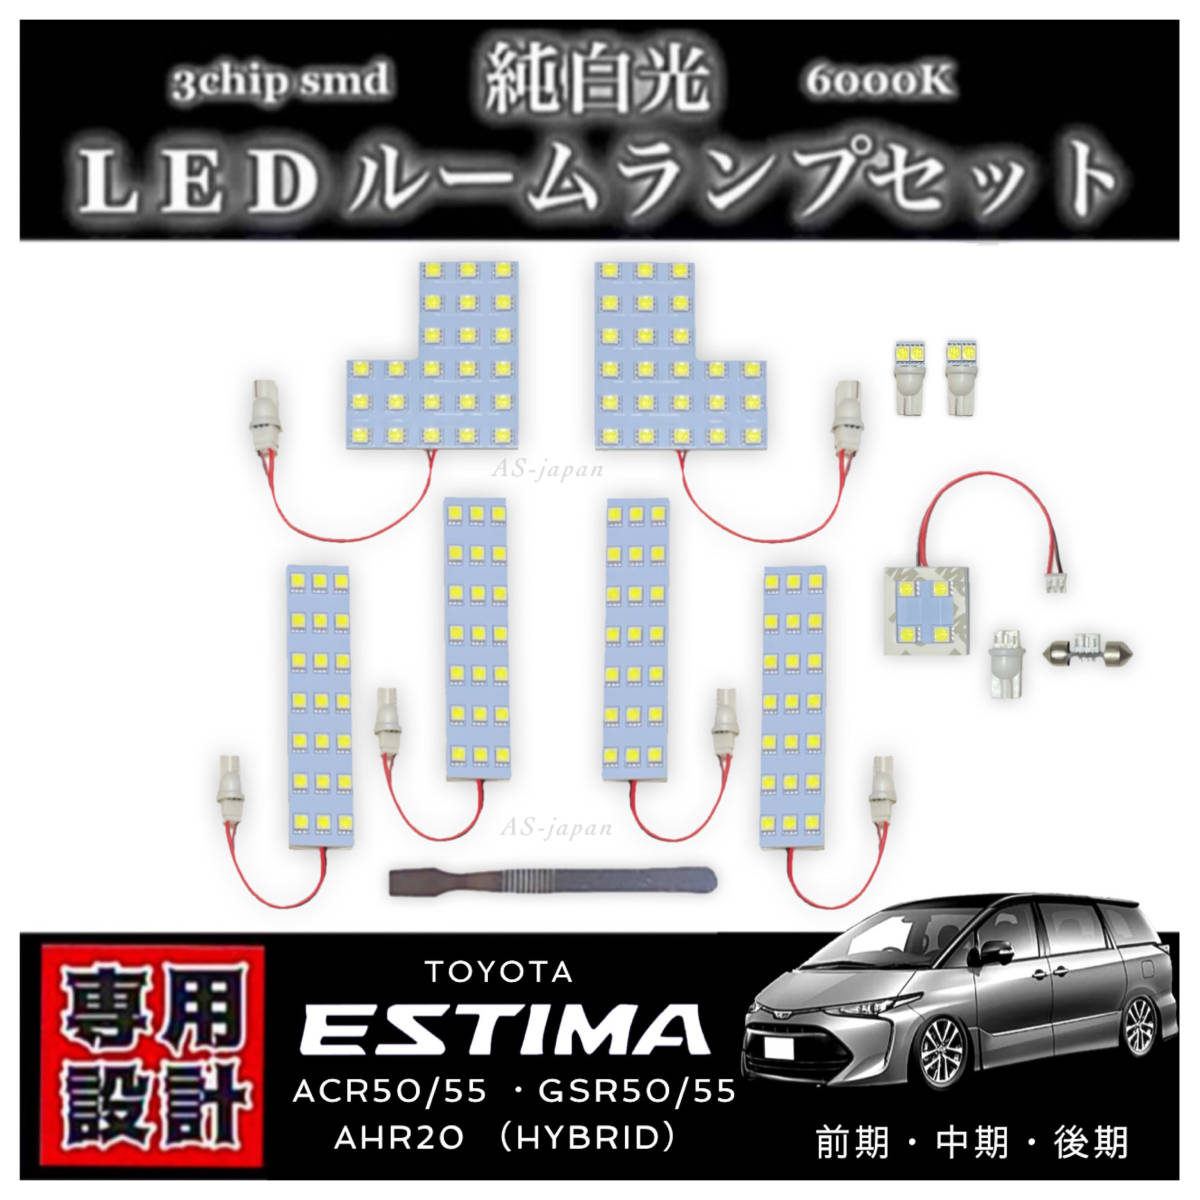 エスティマ 50系 20系 専用設計 LED ルームランプ セット 高輝度 3chip SMD 6000K 純白光 ACR50 GSR50 ACR55 GSR55 AHR20 前期 中期 後期の画像1